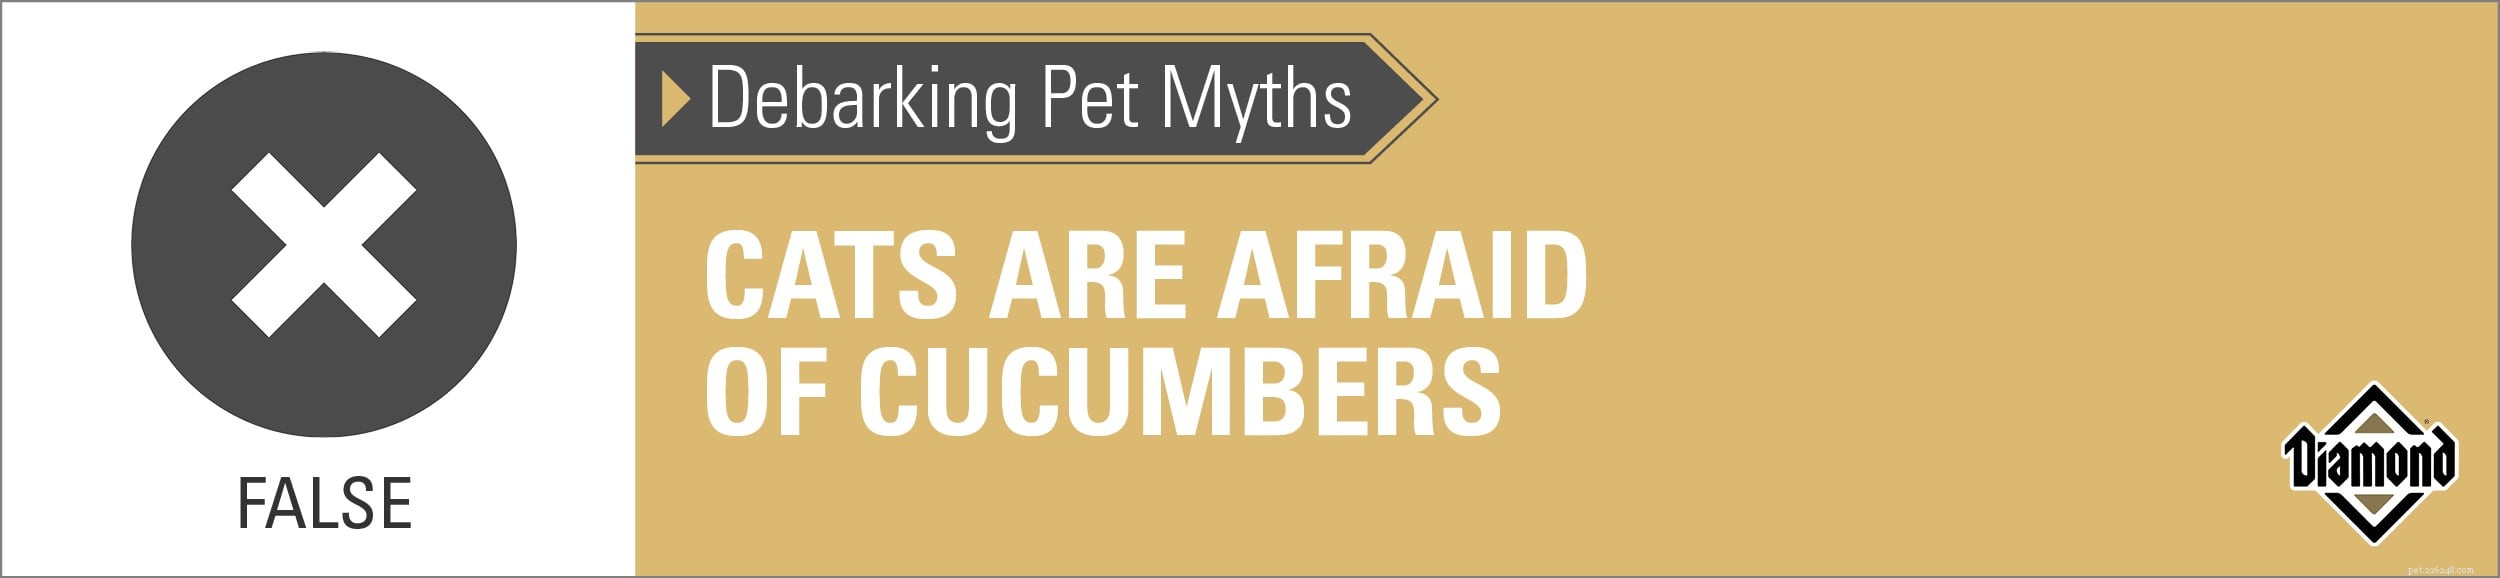 DEBARKING PET MYTHEN:zijn katten bang voor komkommers?